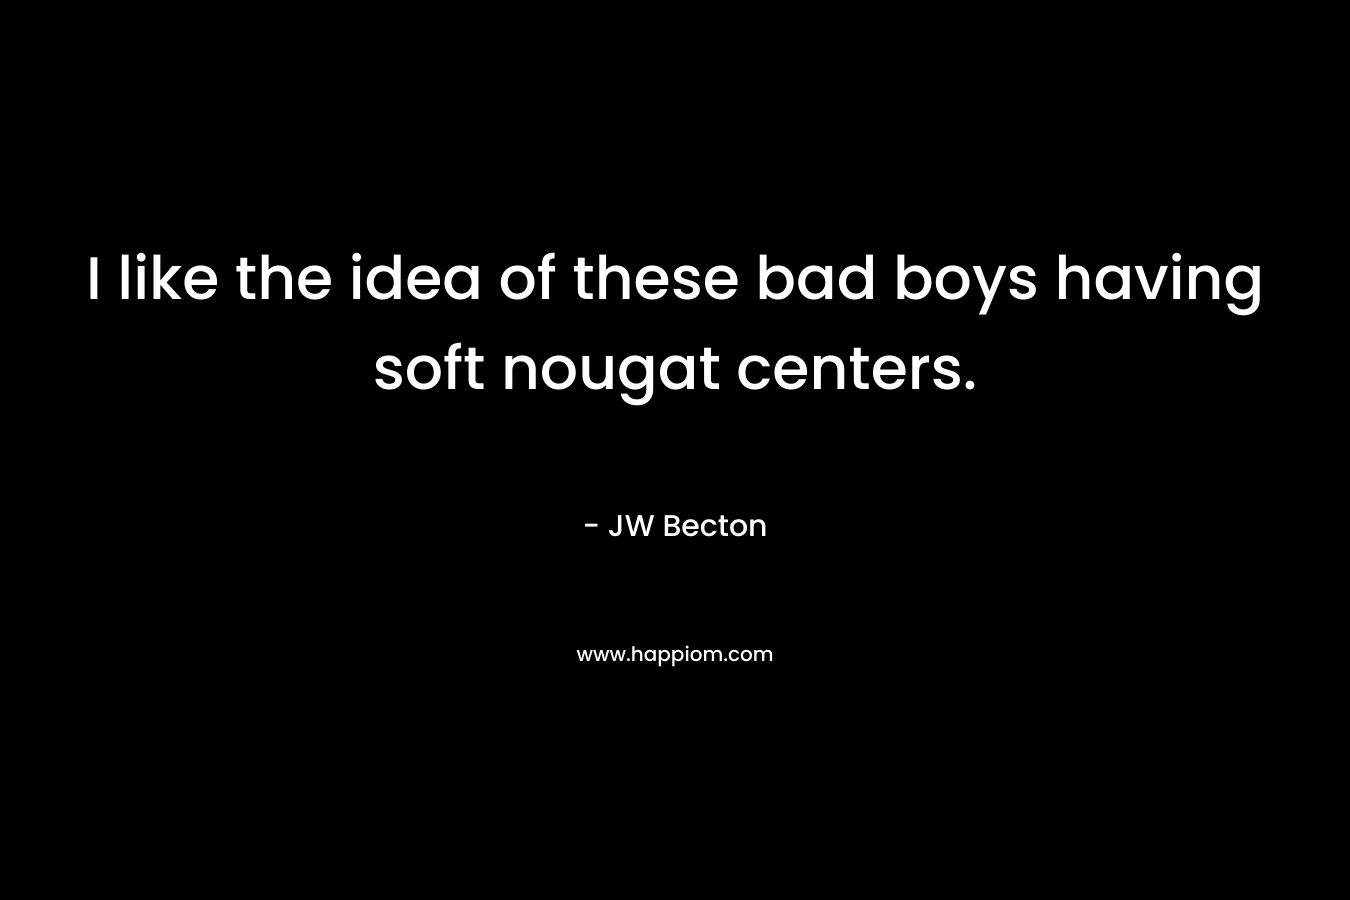 I like the idea of these bad boys having soft nougat centers.